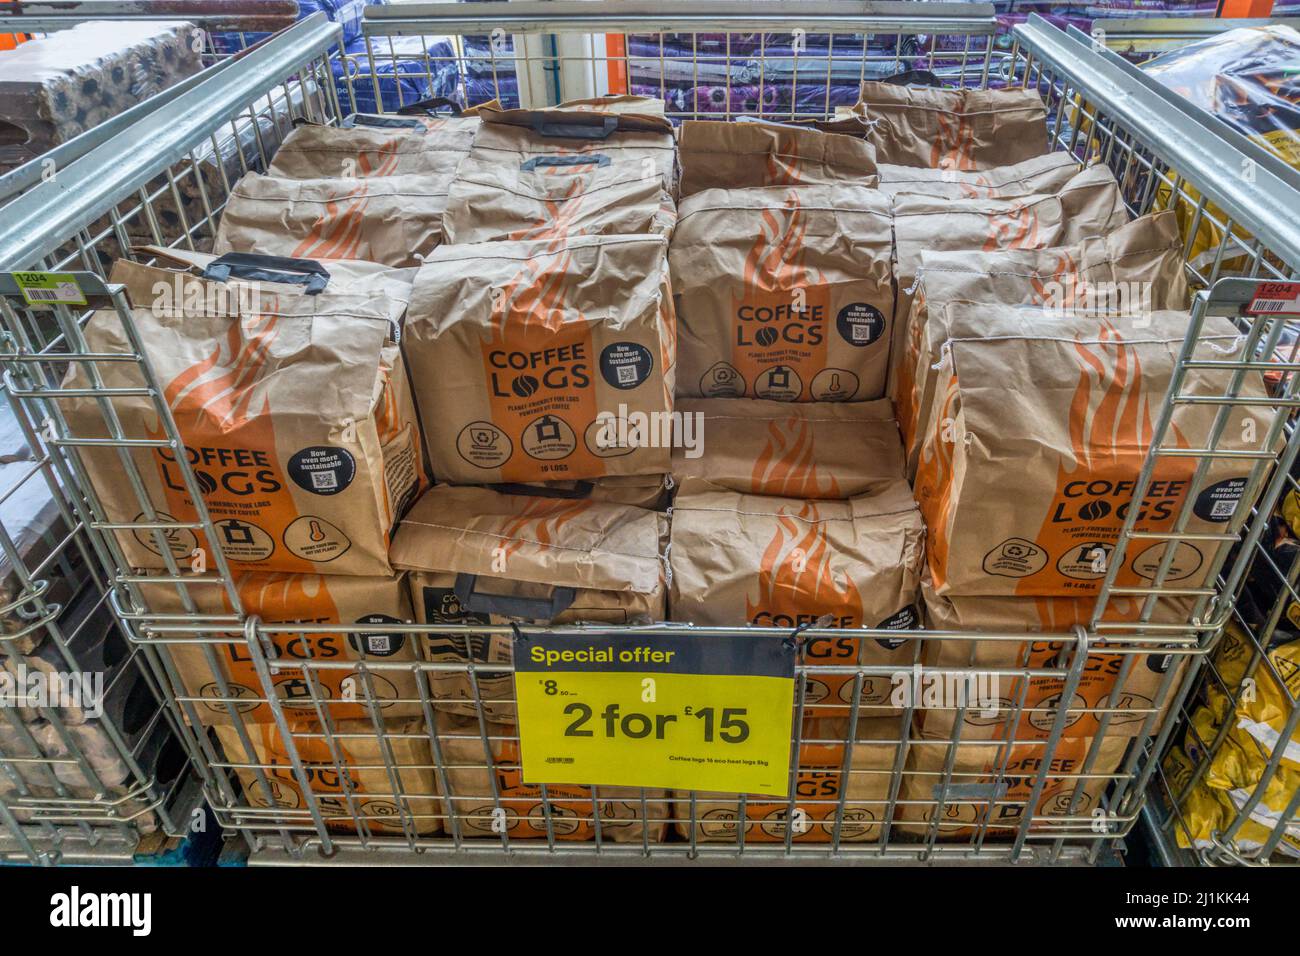 Coffee Logs zum Verkauf. Brennstoff für Kaminöfen aus recyceltem Kaffeesatz, der in einem Supermarkt verkauft wird. Stockfoto